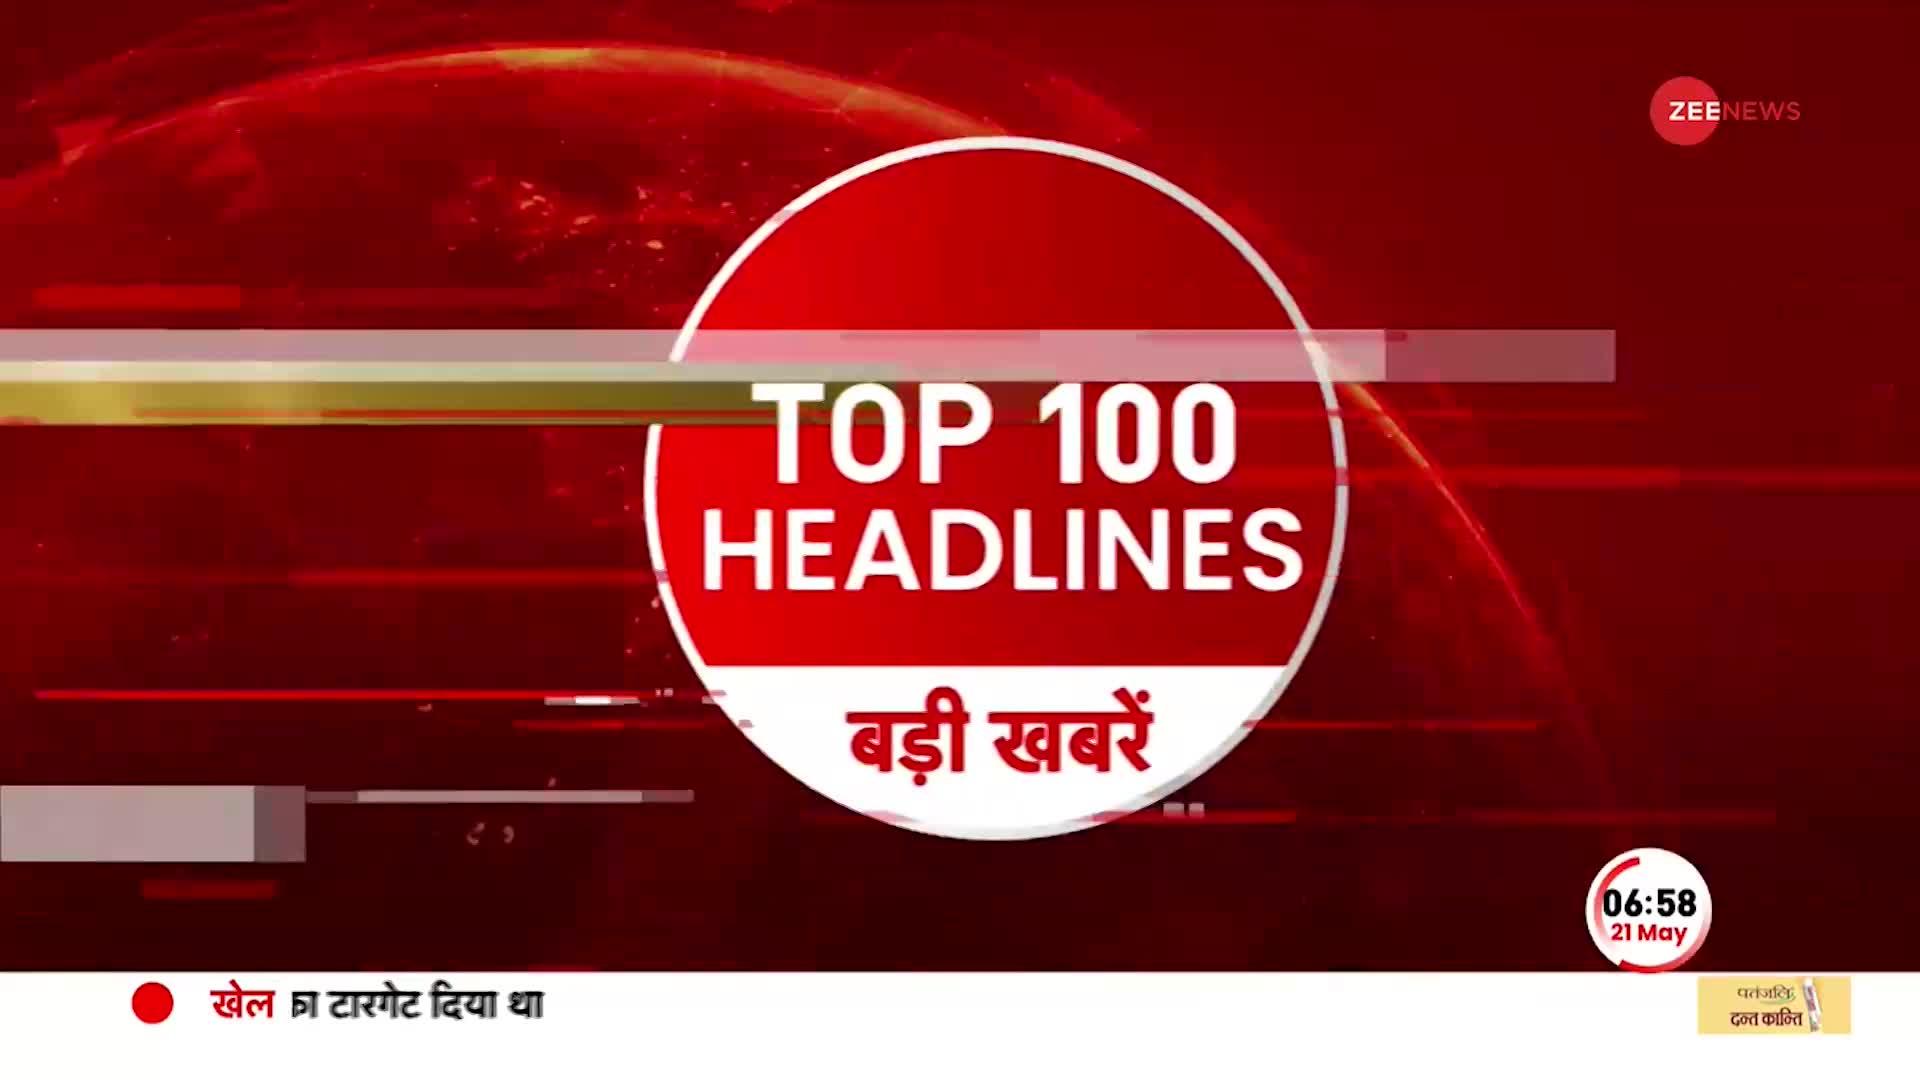 TOP 100: सुबह की 100 बड़ी खबरें सुपरफास्ट अंदाज मे